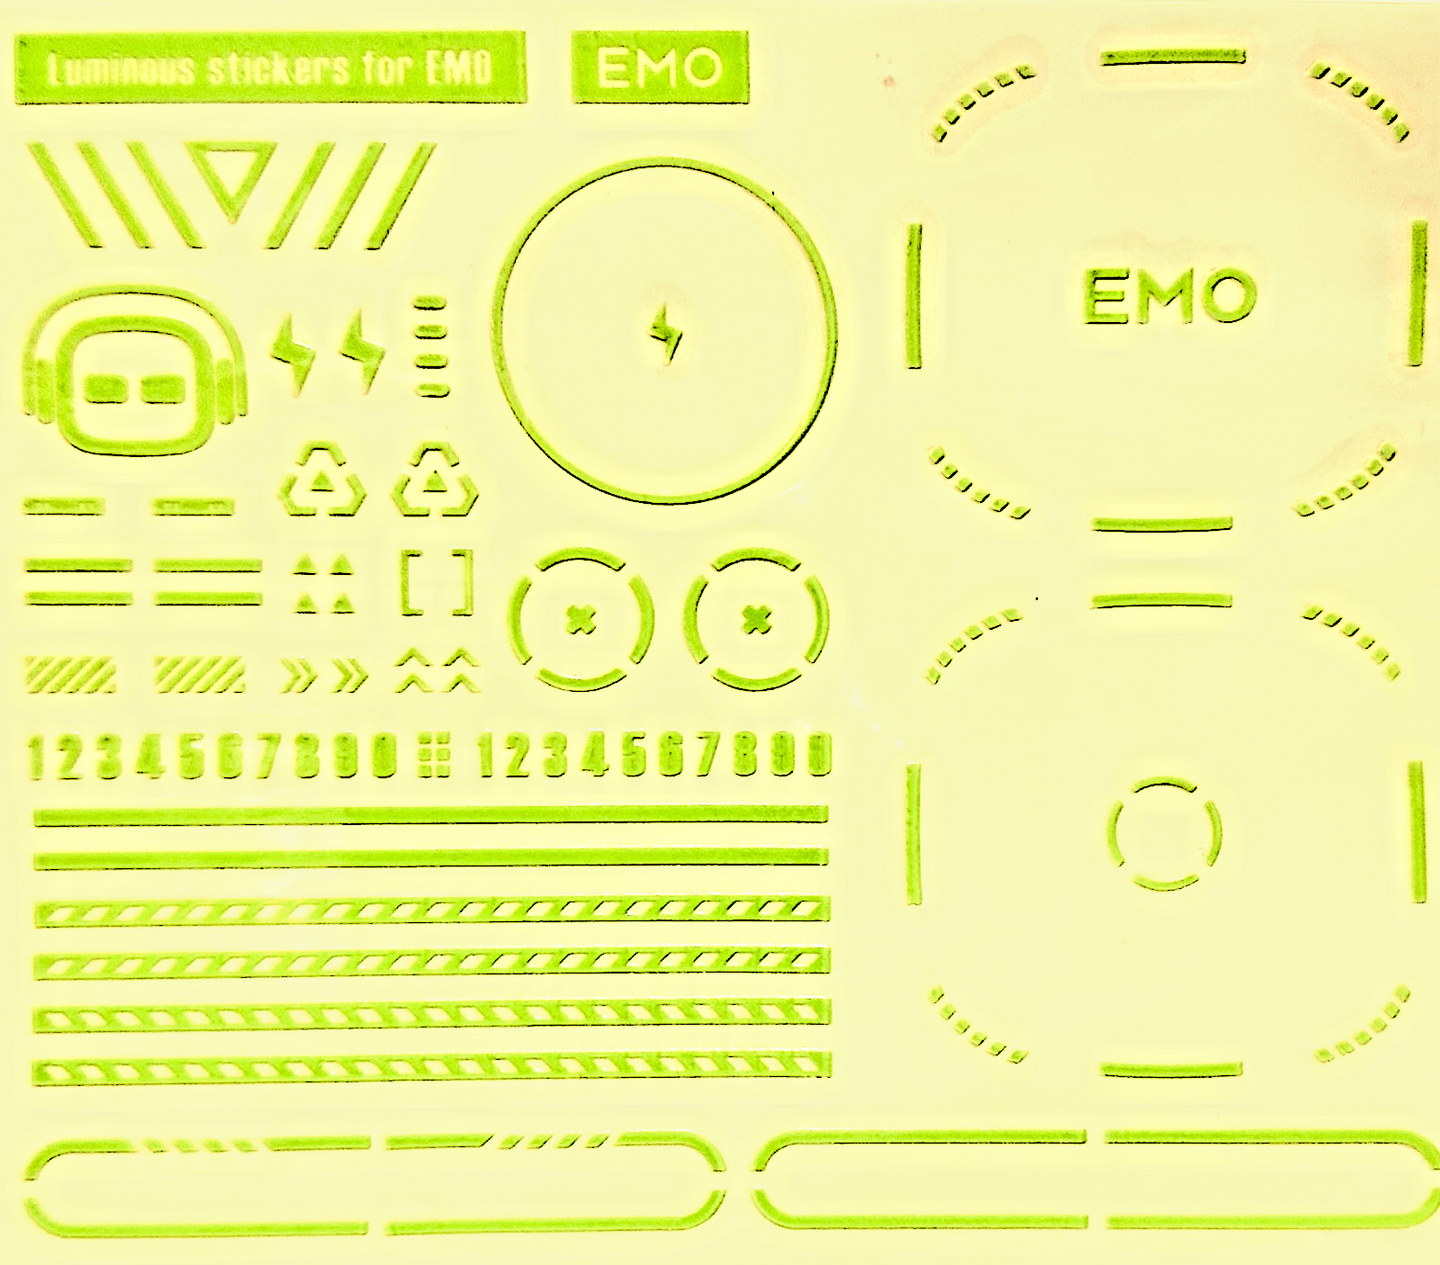 EMO Desktop robot pet toy glowing STICKERs - Chys Thijarah